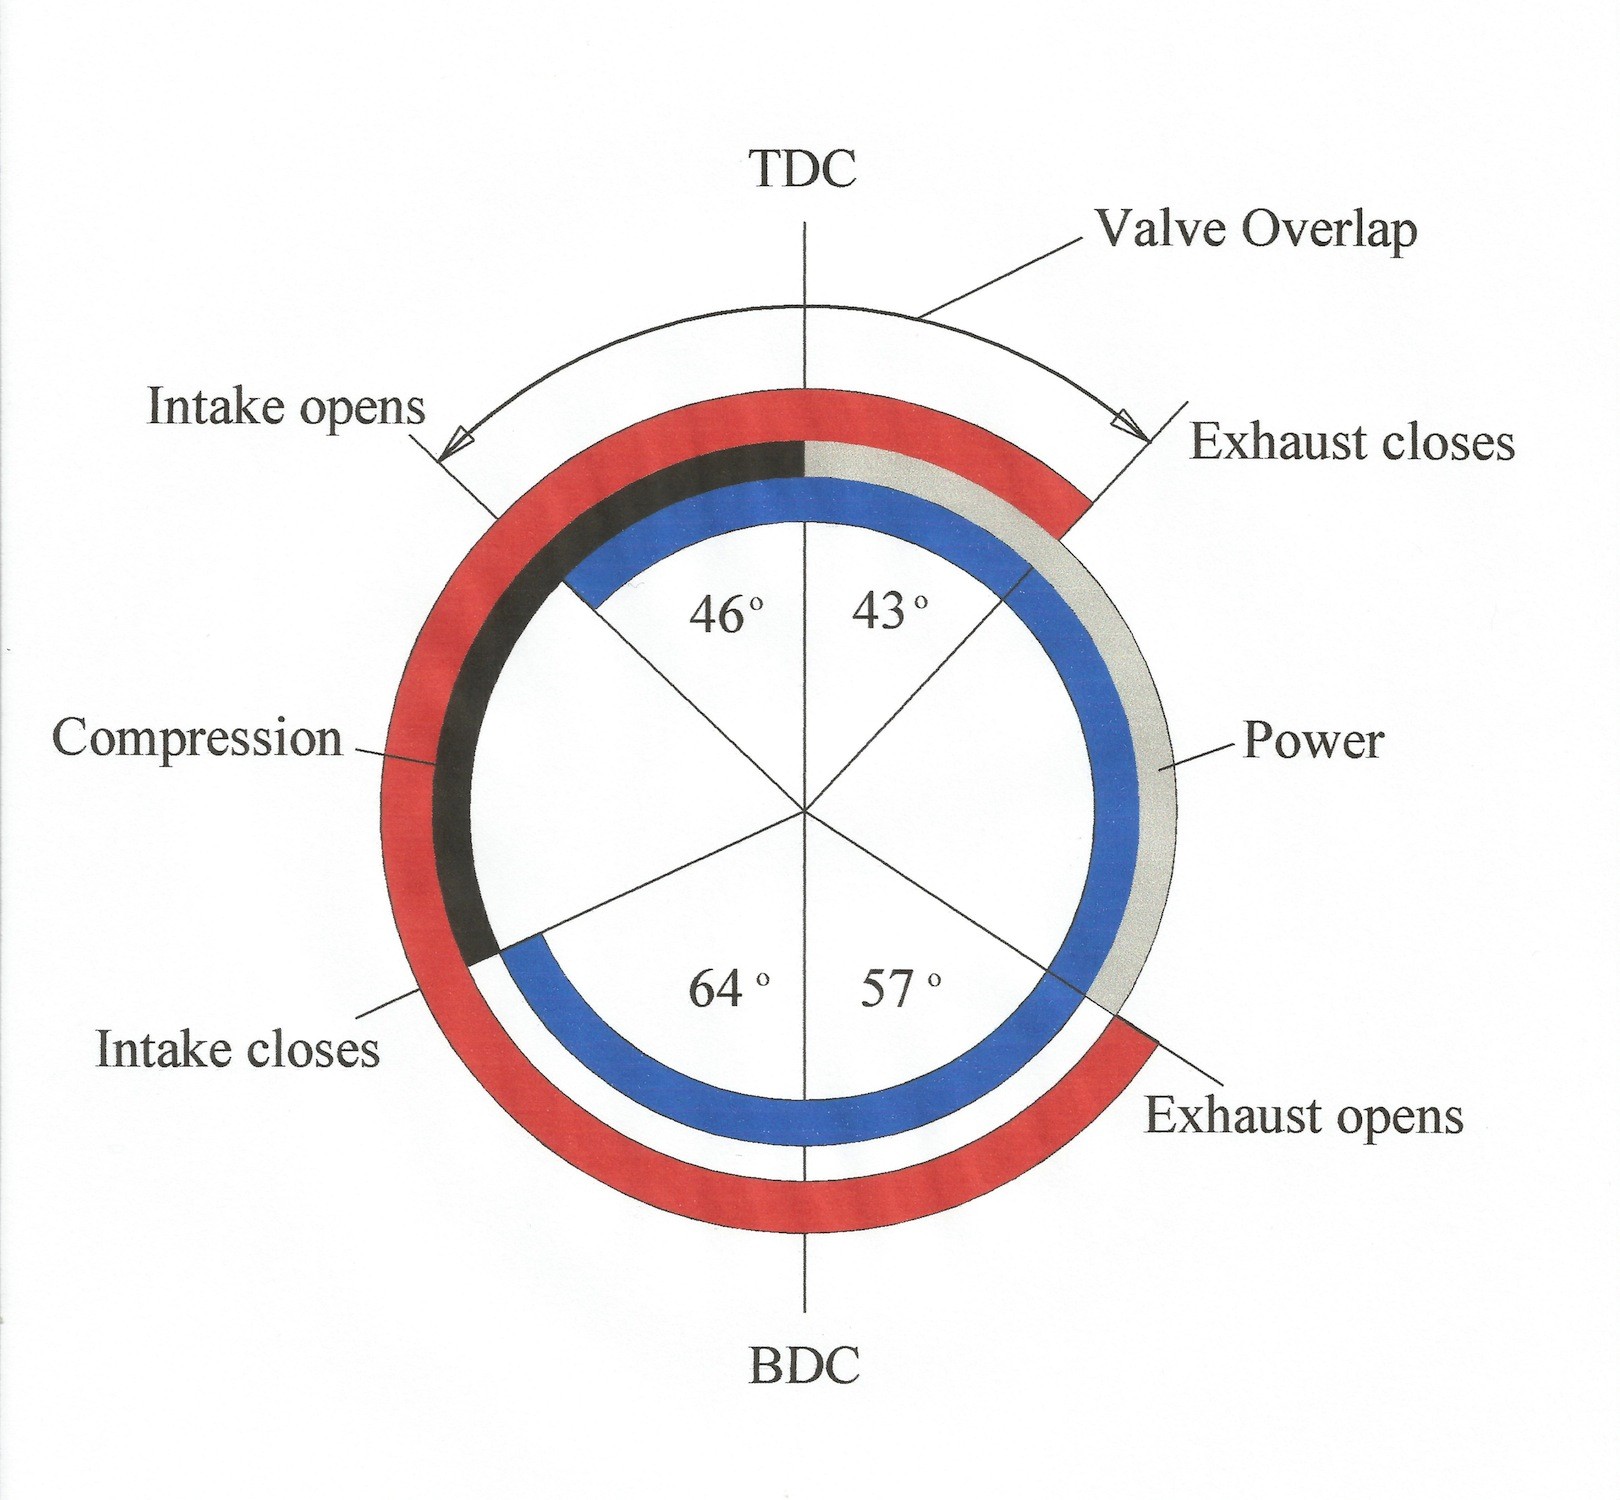 Valve Timing Diagram Diesel Engine Engine Valve Timing Diagram Valve Overlap Of Valve Timing Diagram Diesel Engine